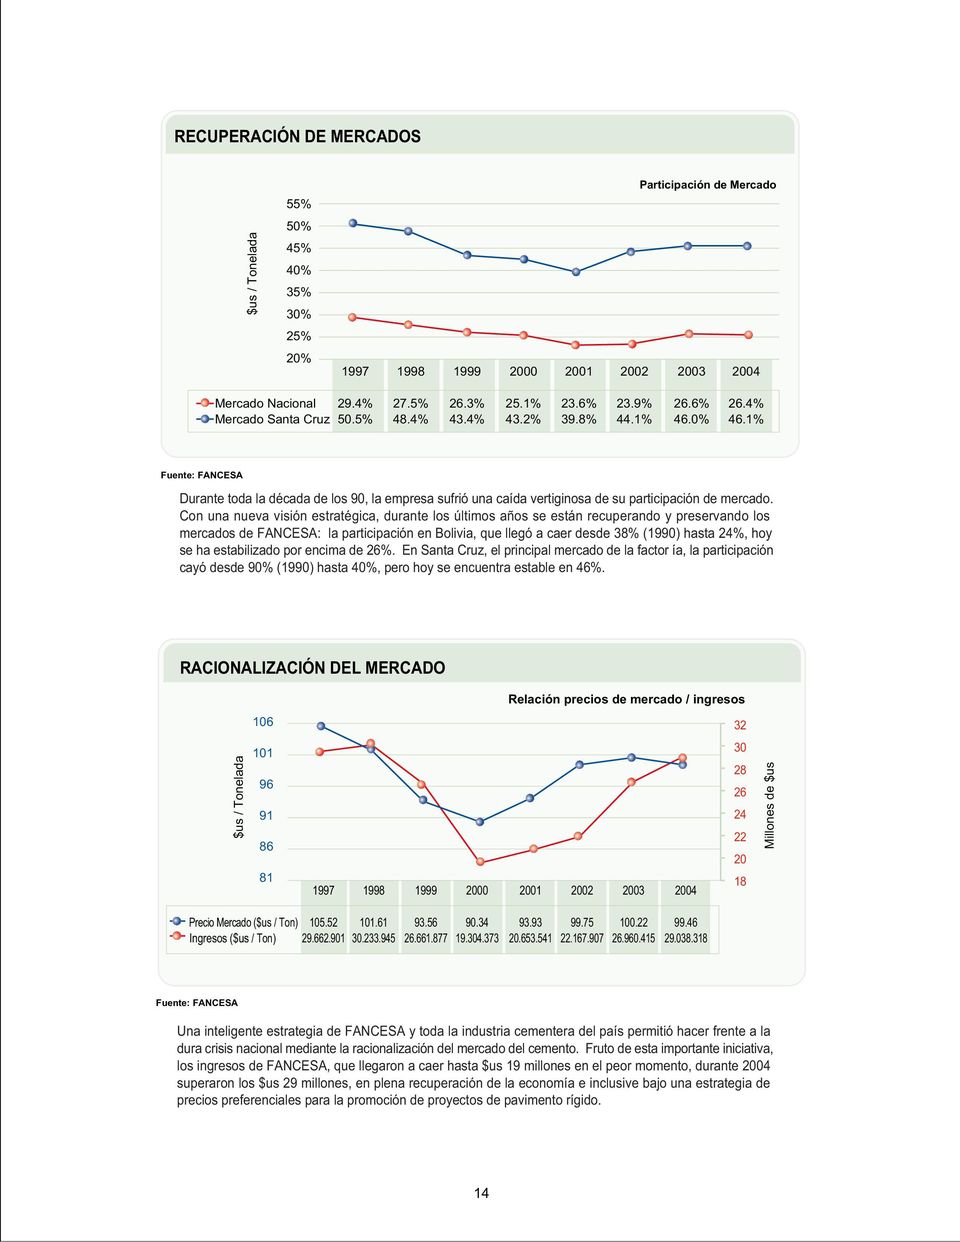 Con una nueva visión estratégica, durante los últimos años se están recuperando y preservando los mercados de FANCESA: la participación en Bolivia, que llegó a caer desde 38% (1990) hasta 24%, hoy se